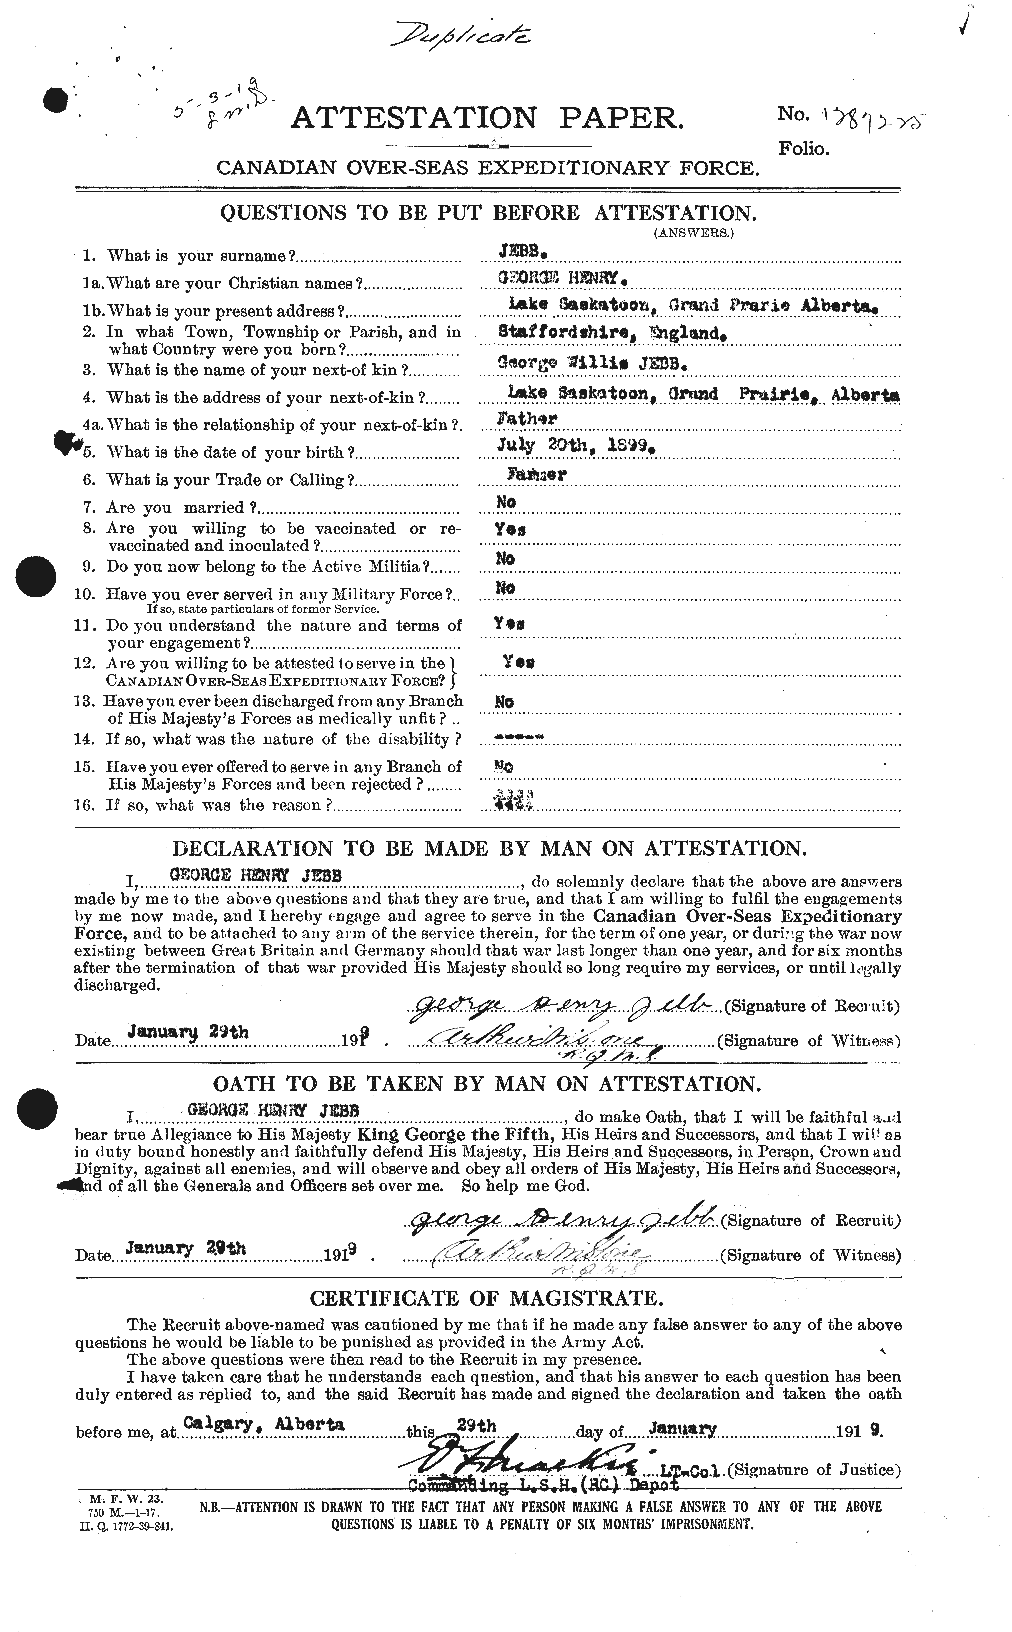 Dossiers du Personnel de la Première Guerre mondiale - CEC 416155a